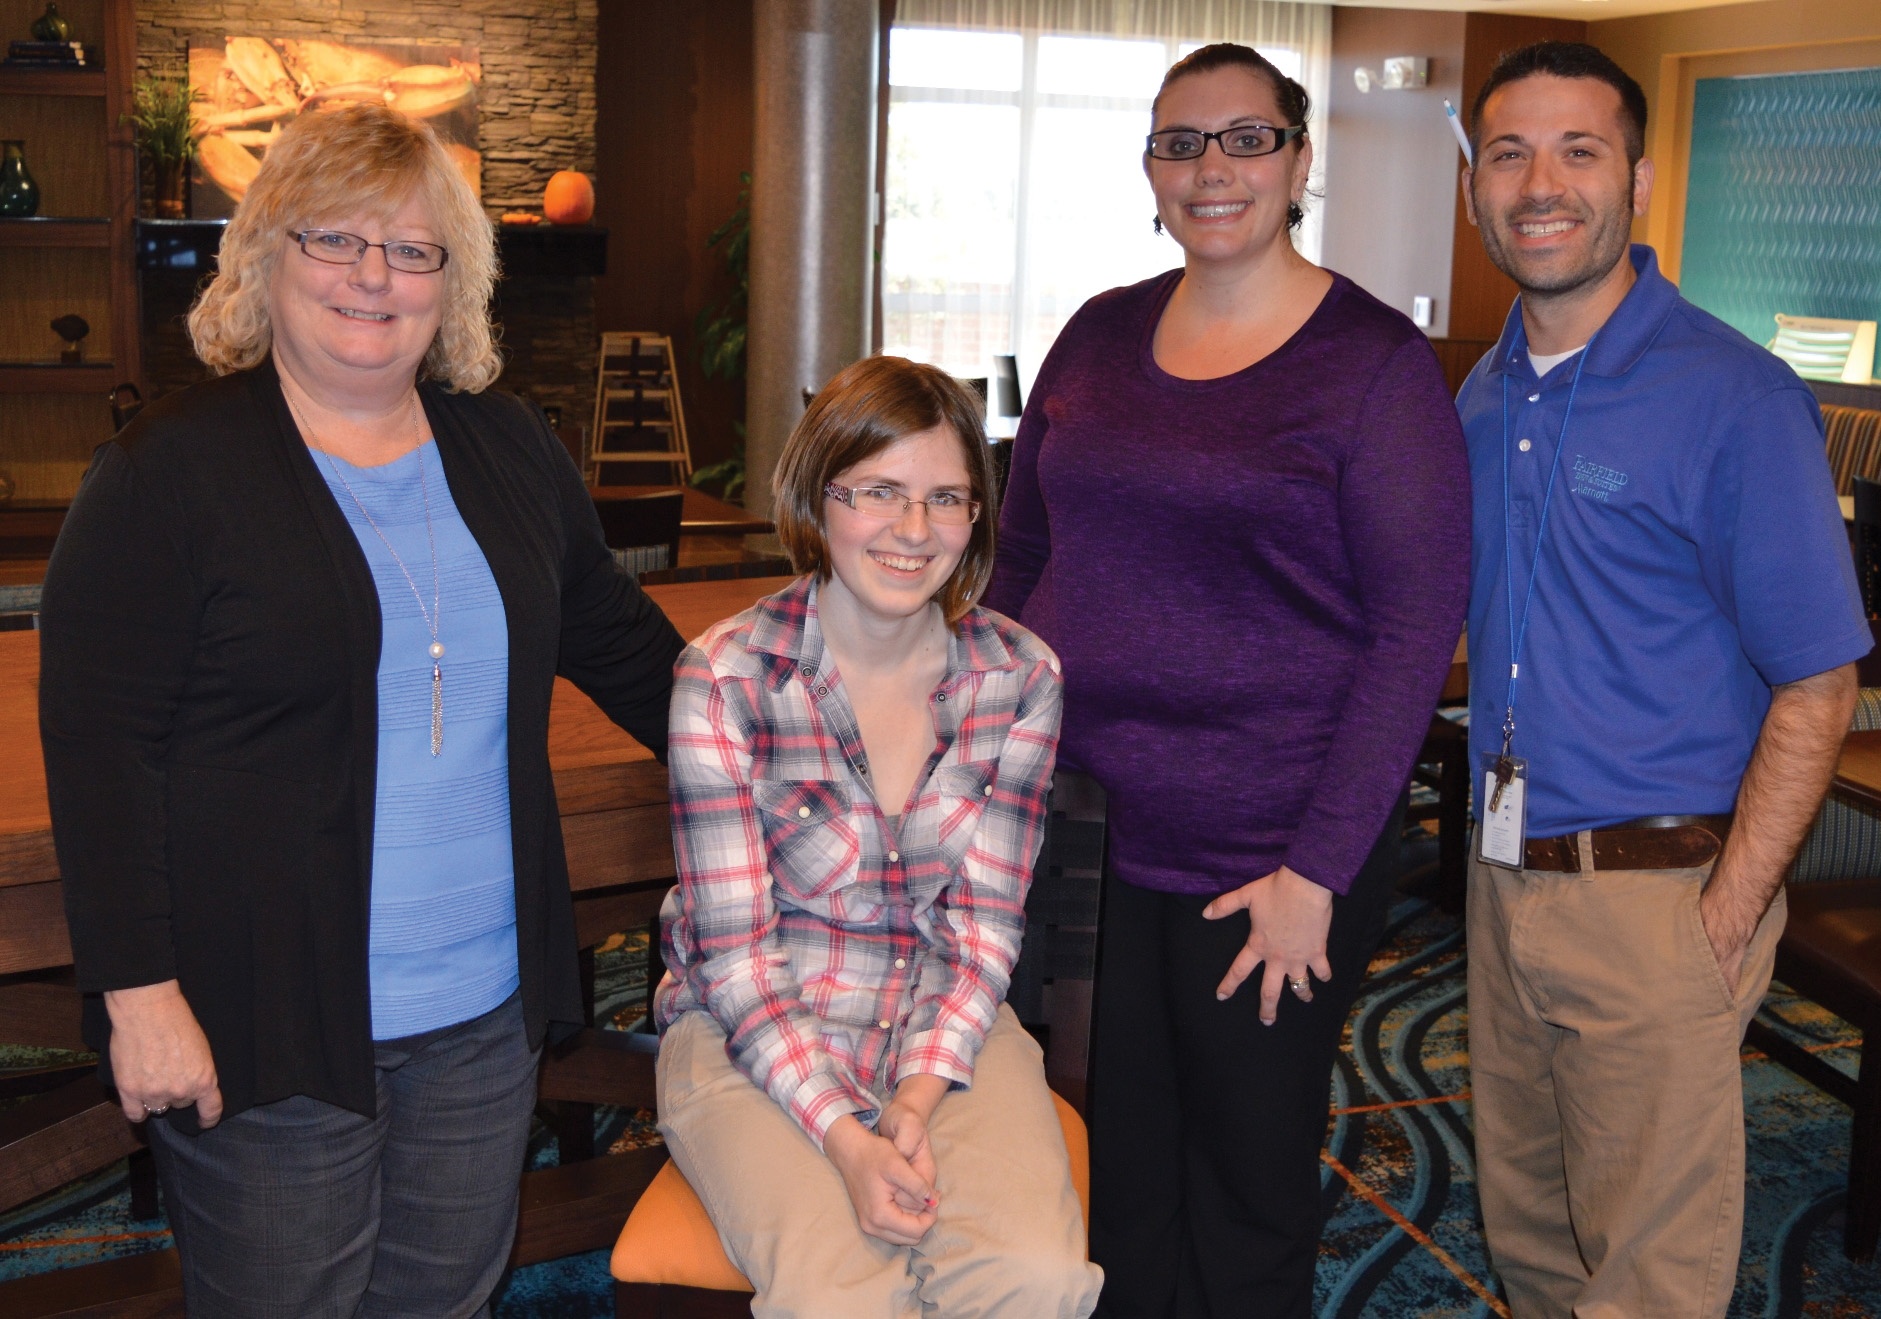 Fairfield Inn employees with Hospitality Program Graduate Abby.